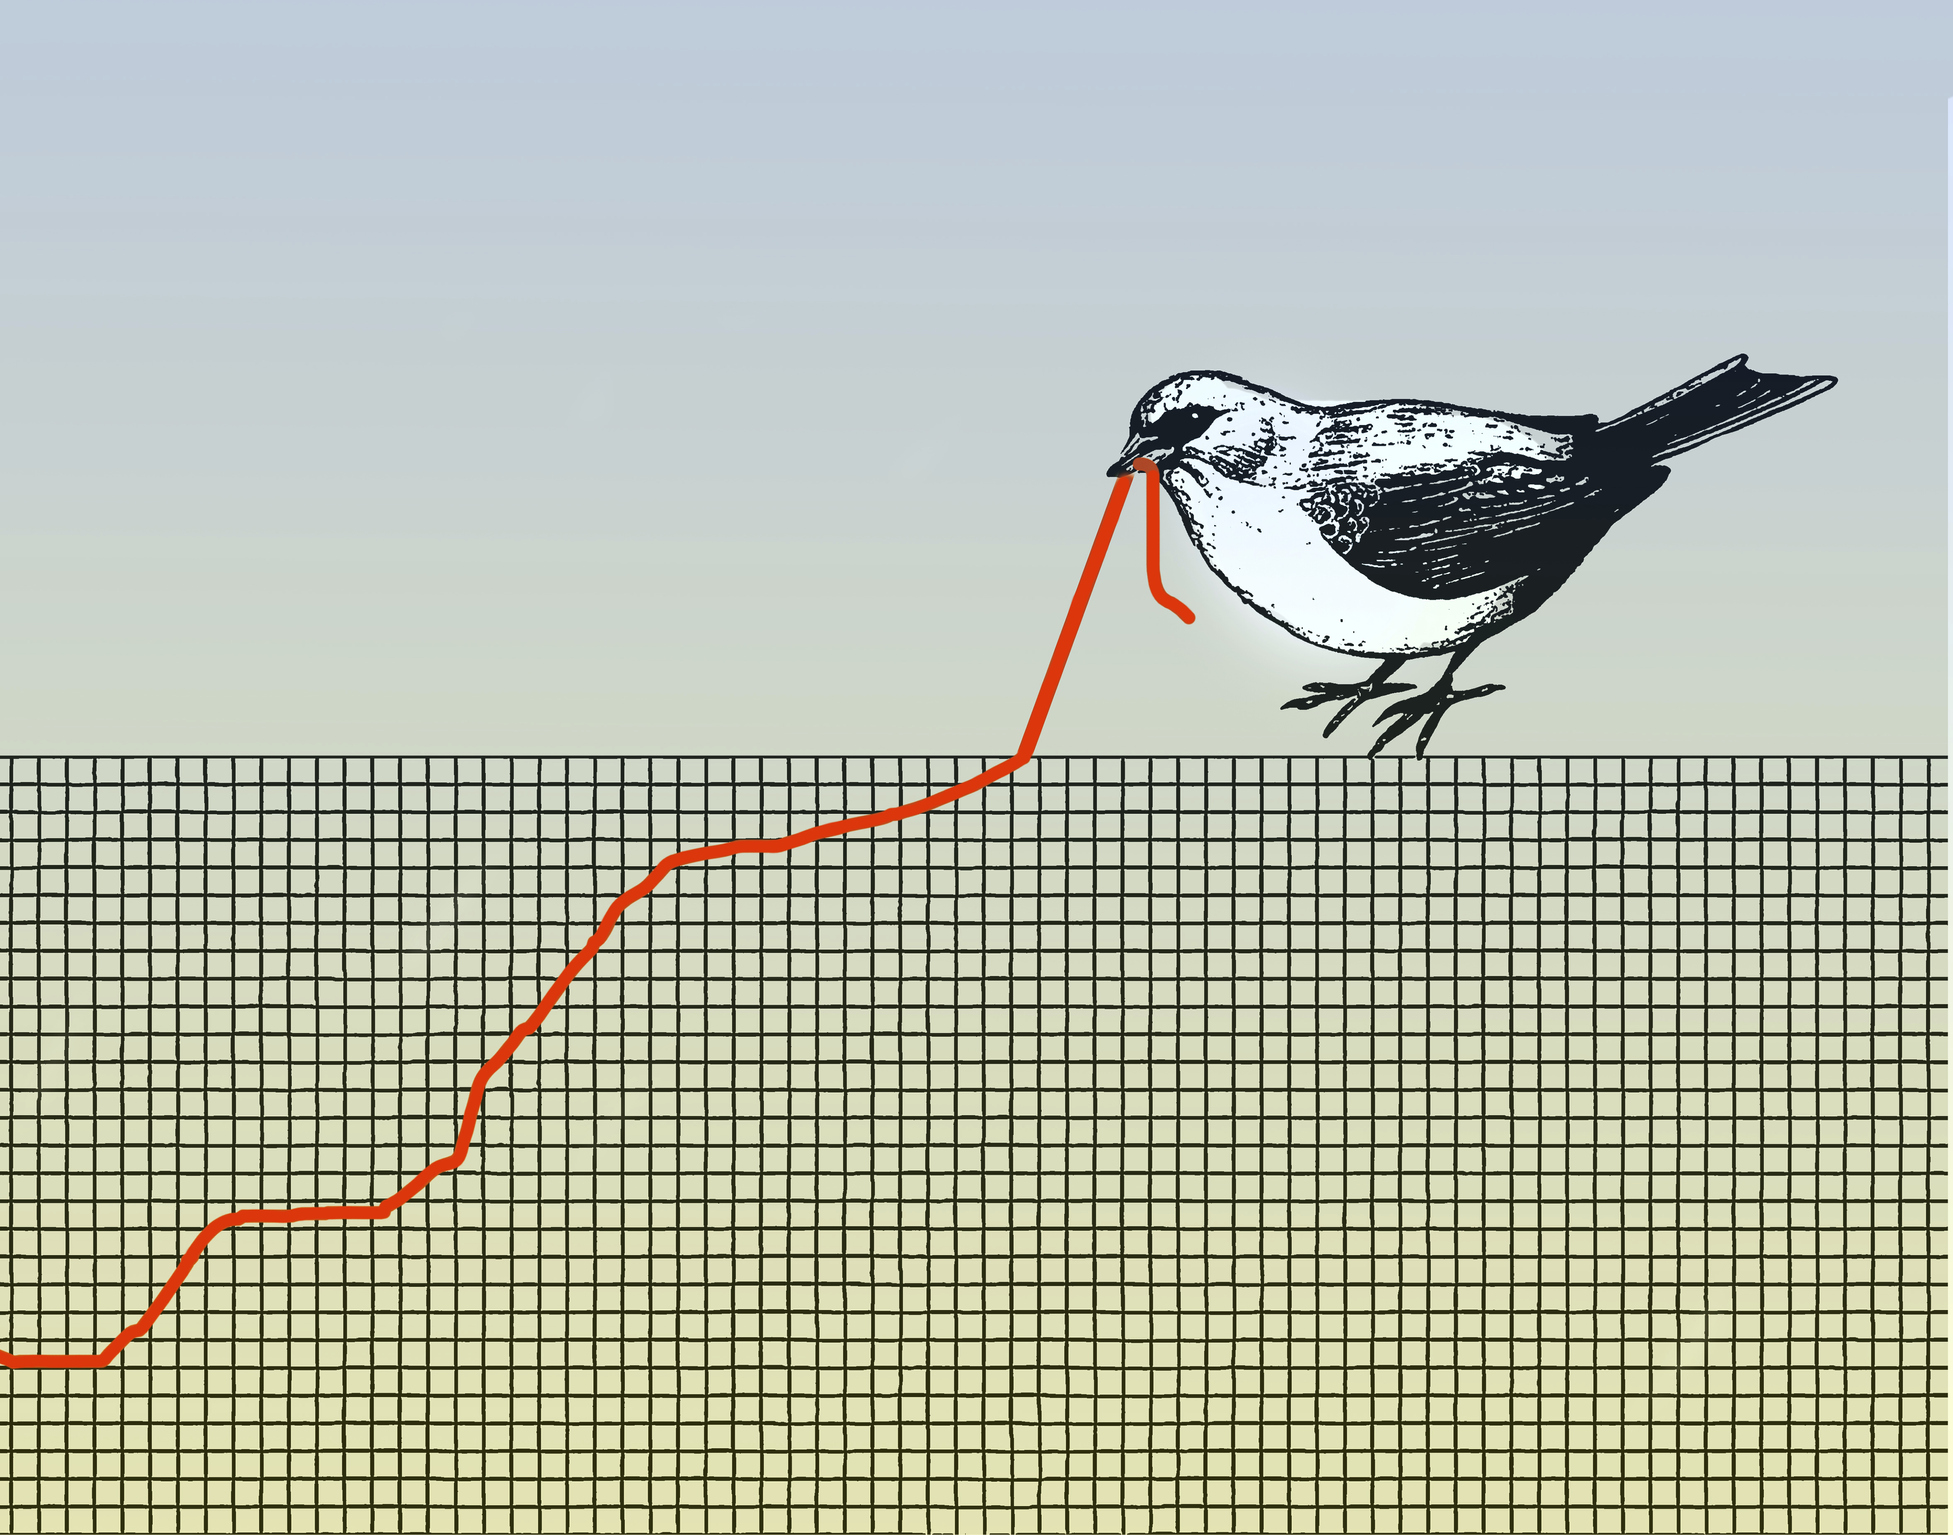 تصویر مفهومی از پرنده ای که گراف را می کشد و شبیه کرم است که مبارزه را نشان می دهد.